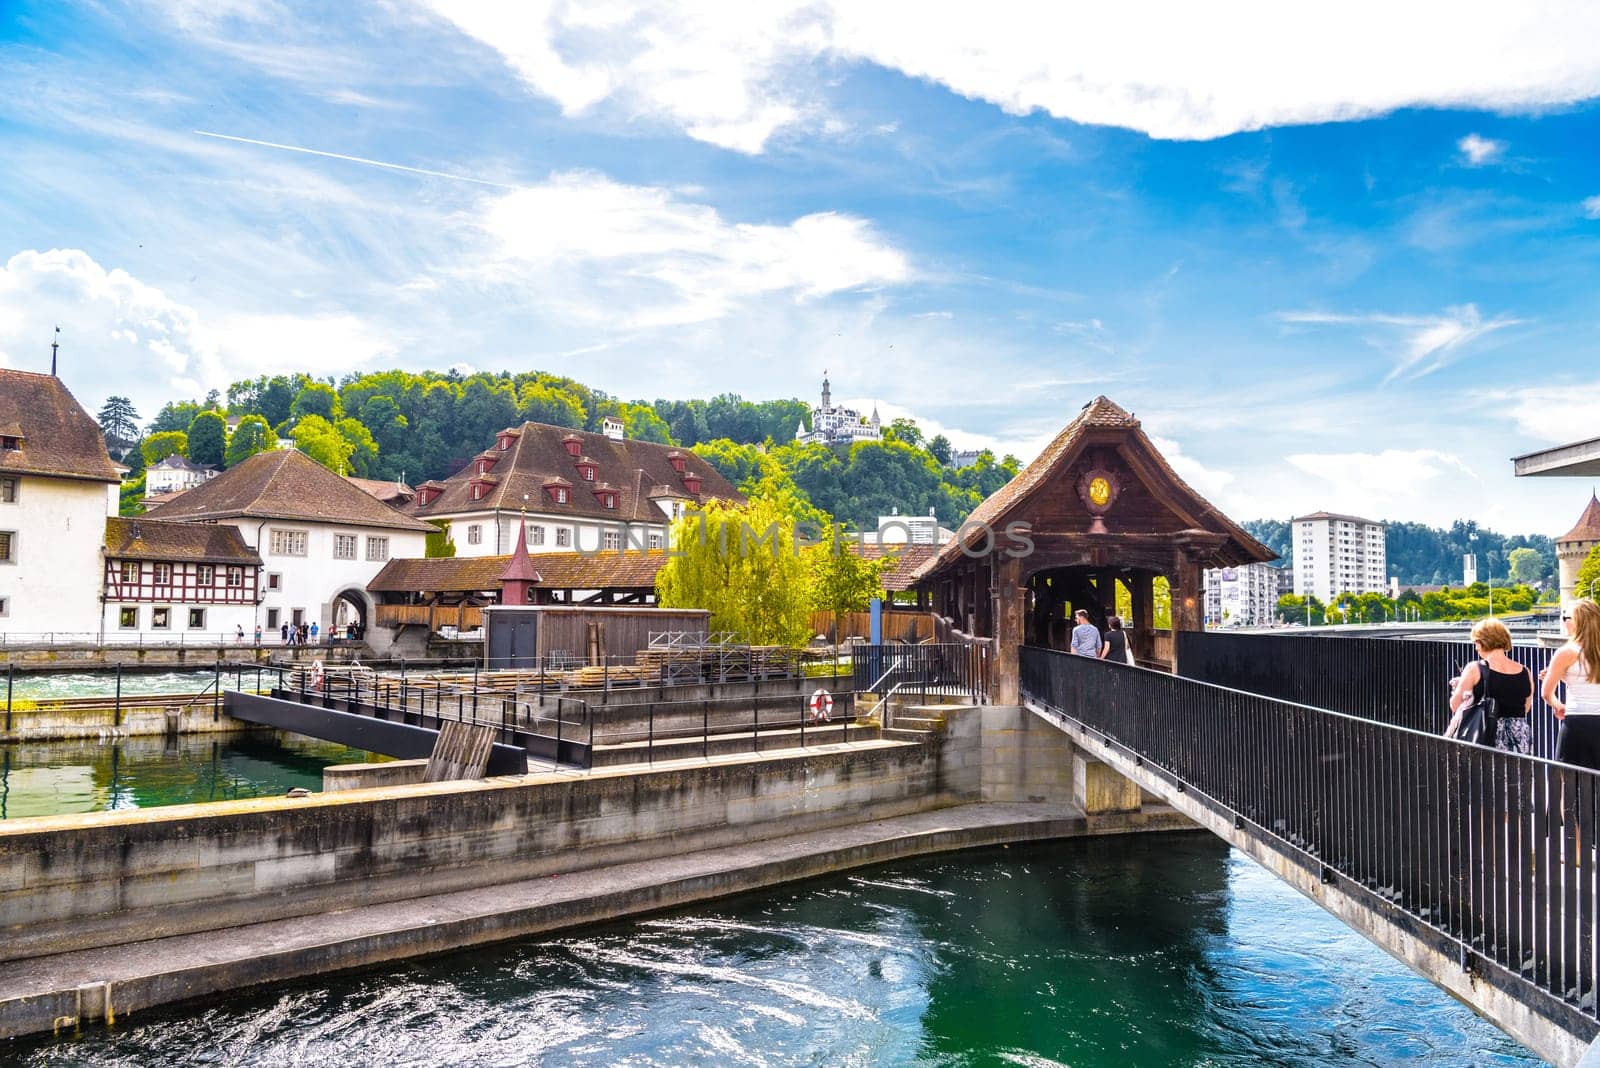 Chapel bridge in the center of Lucerne, Luzern, Switzerland.